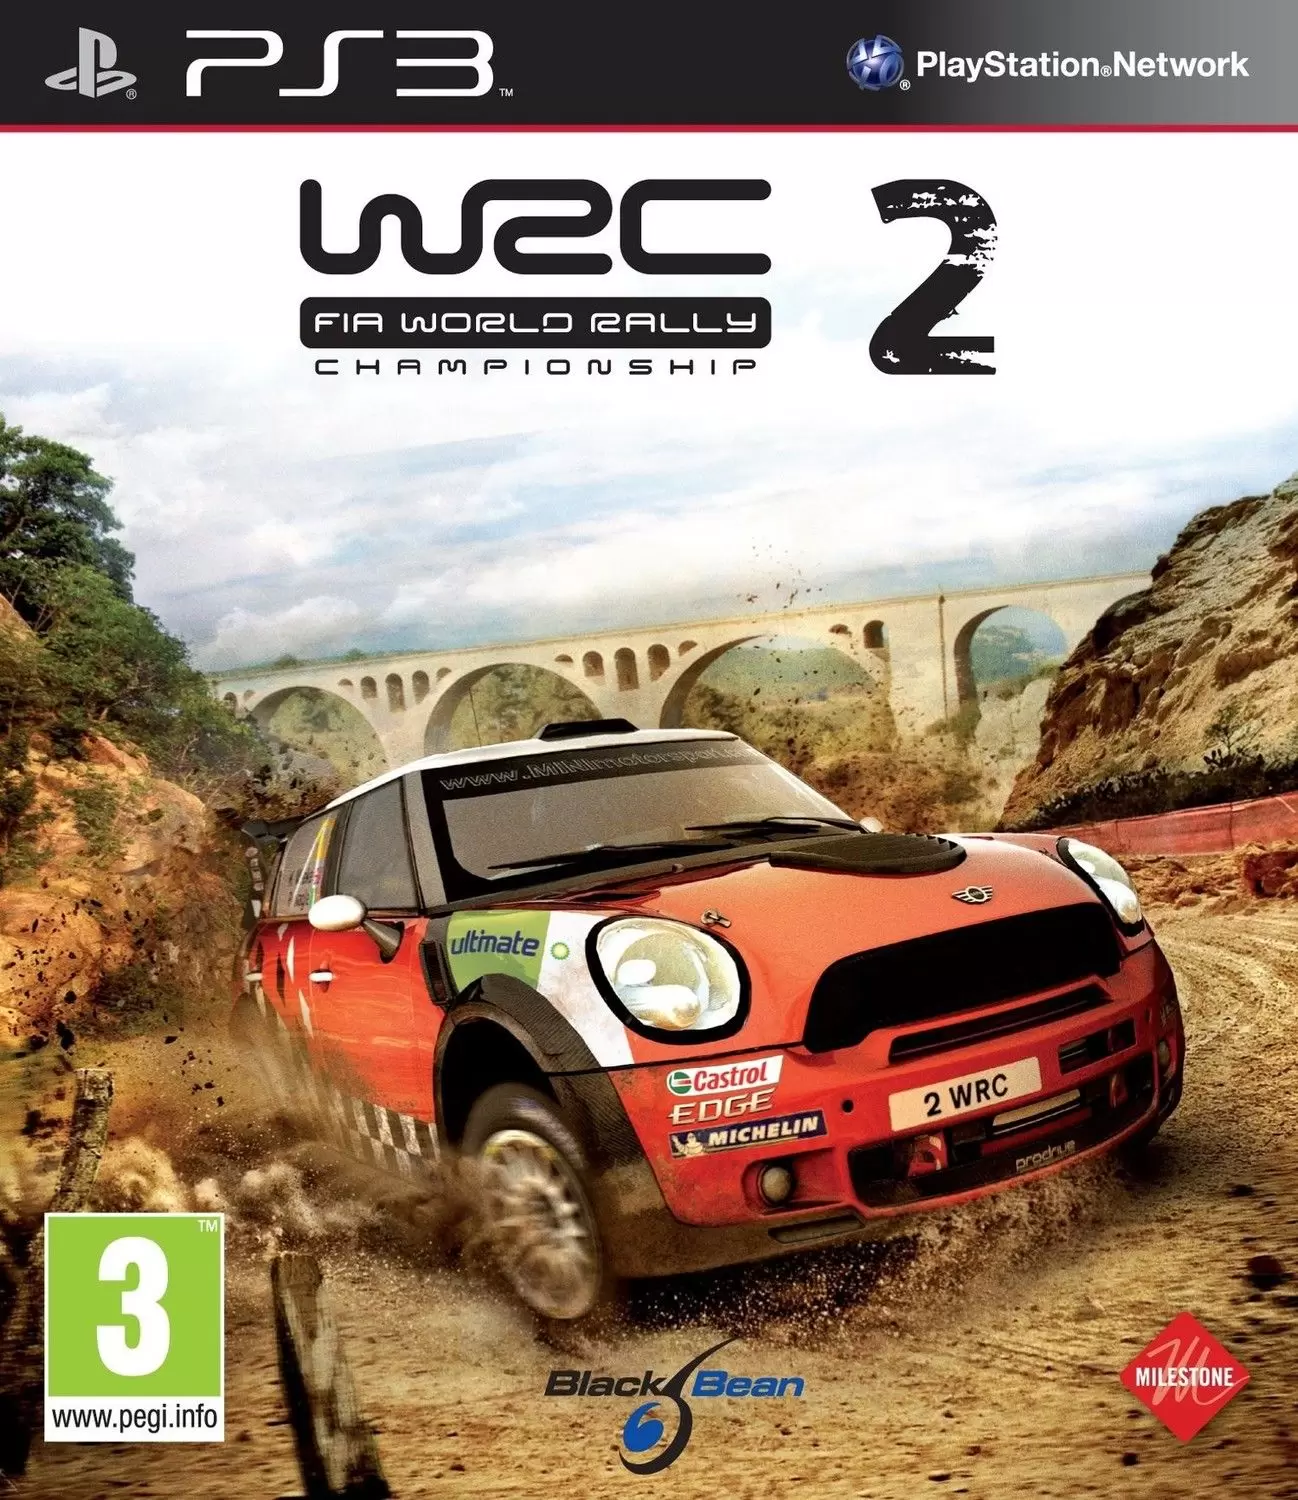 Jeux PS3 - WRC 2